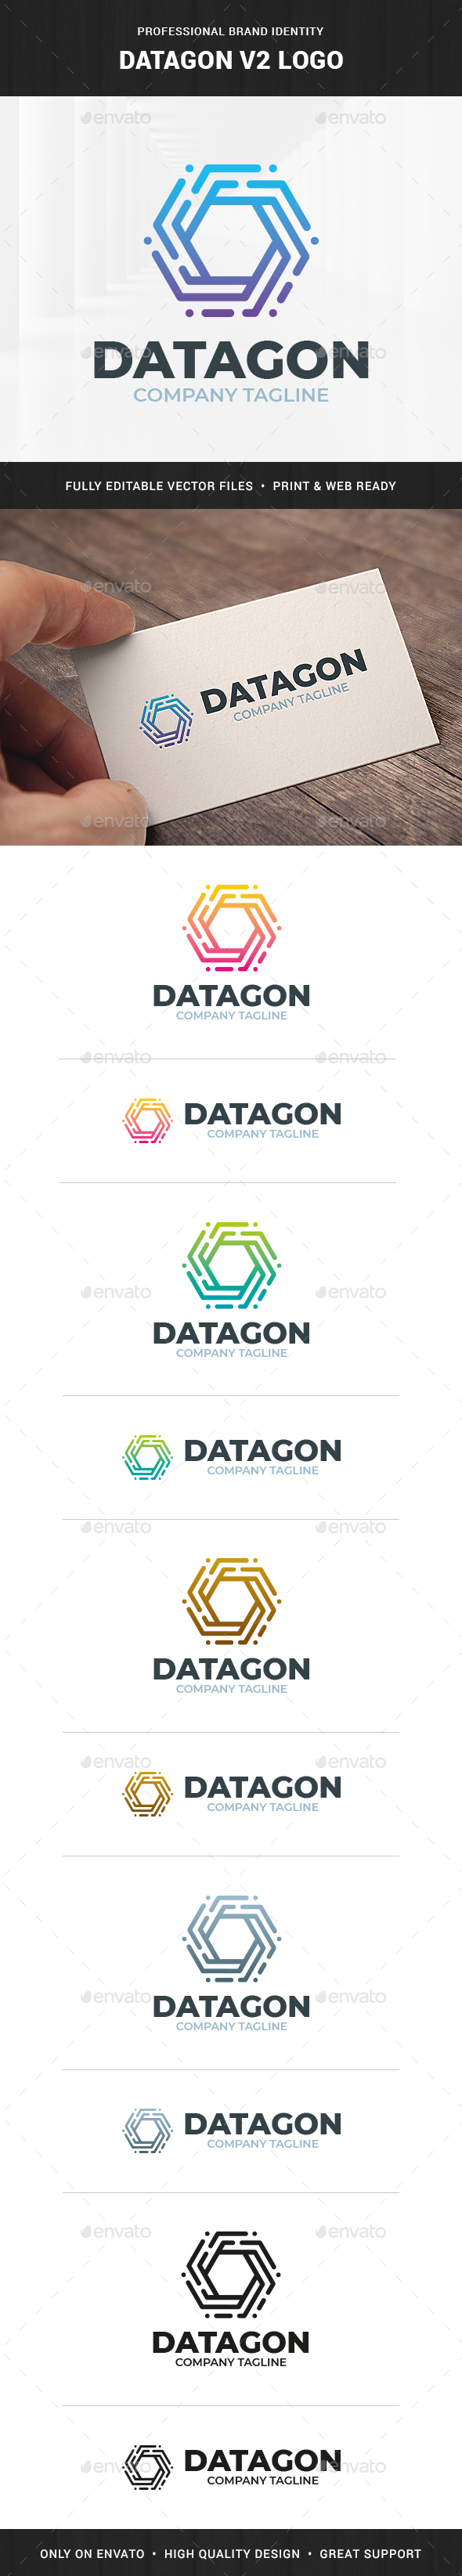 [DOWNLOAD]Datagon V2 Logo Template